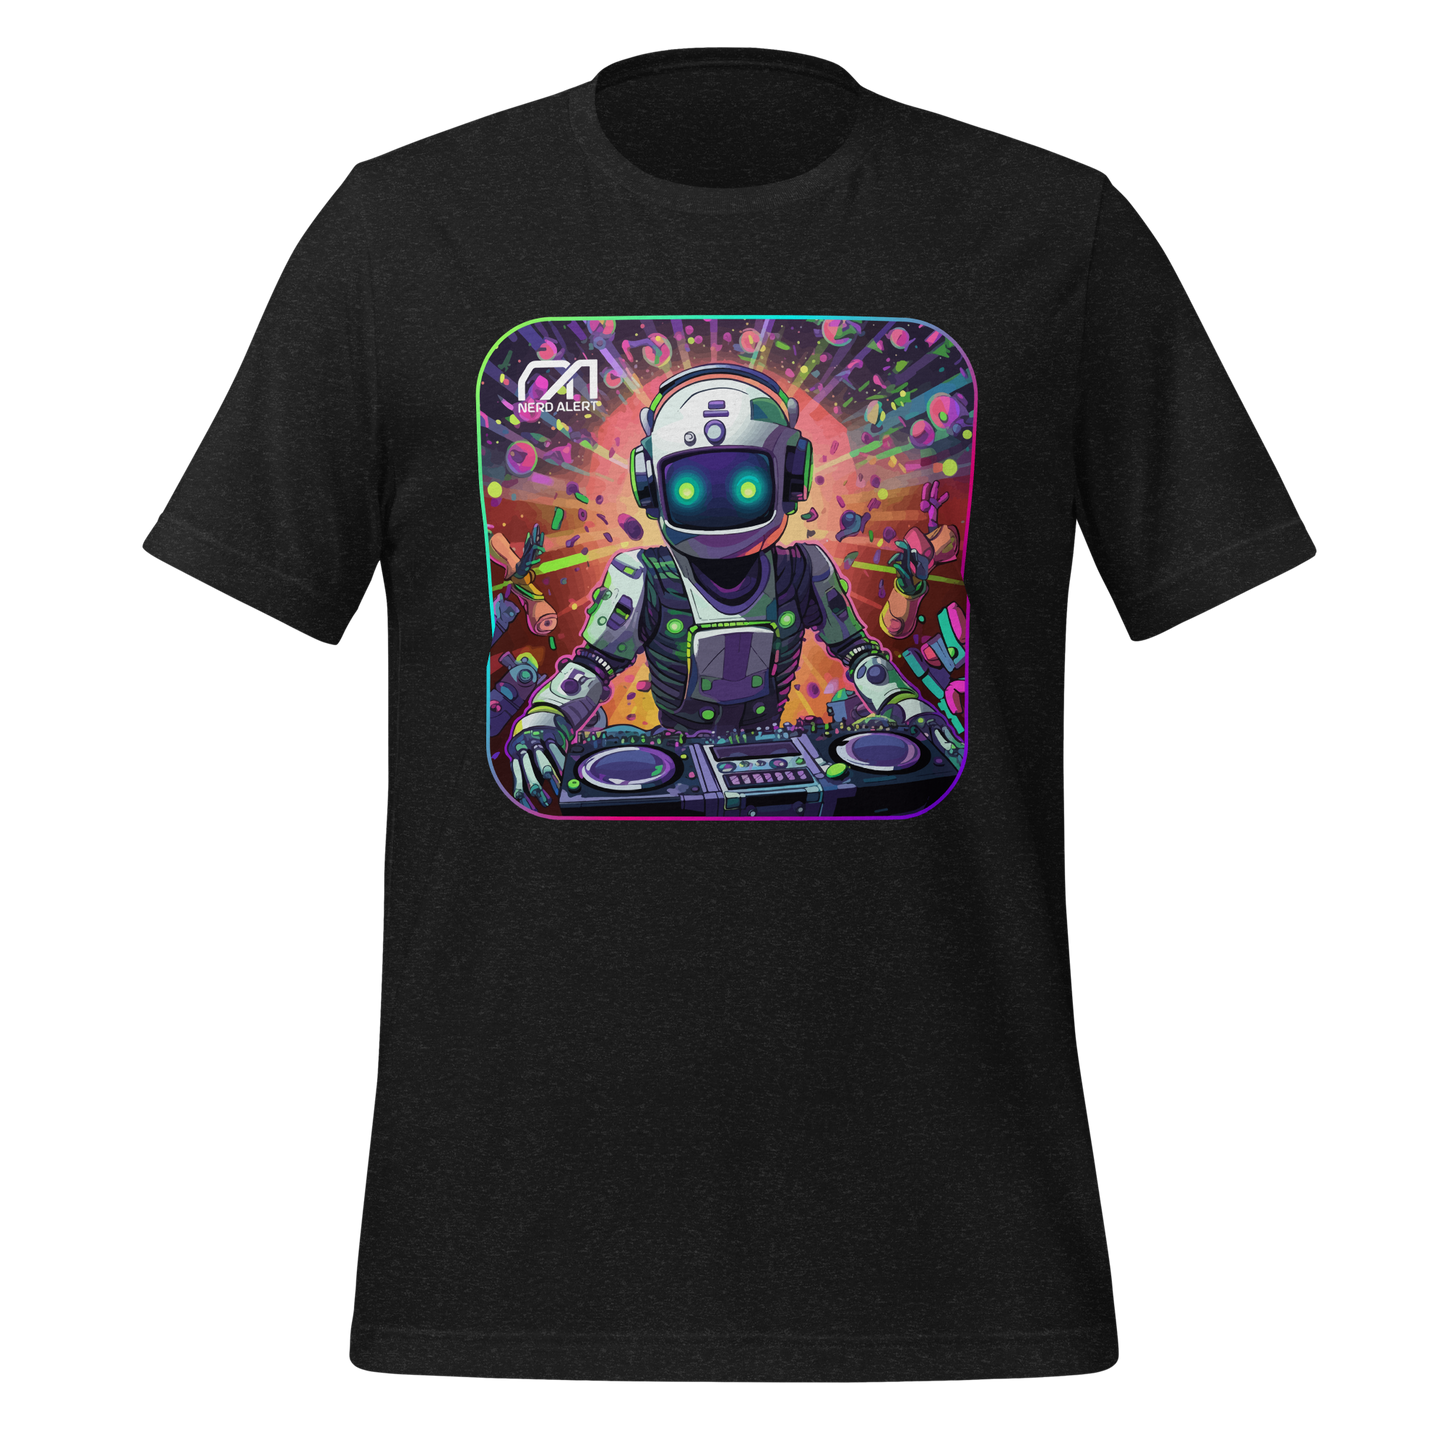 Nerd Alert's Fully Optimized T-Shirt design with a robot as a DJ.